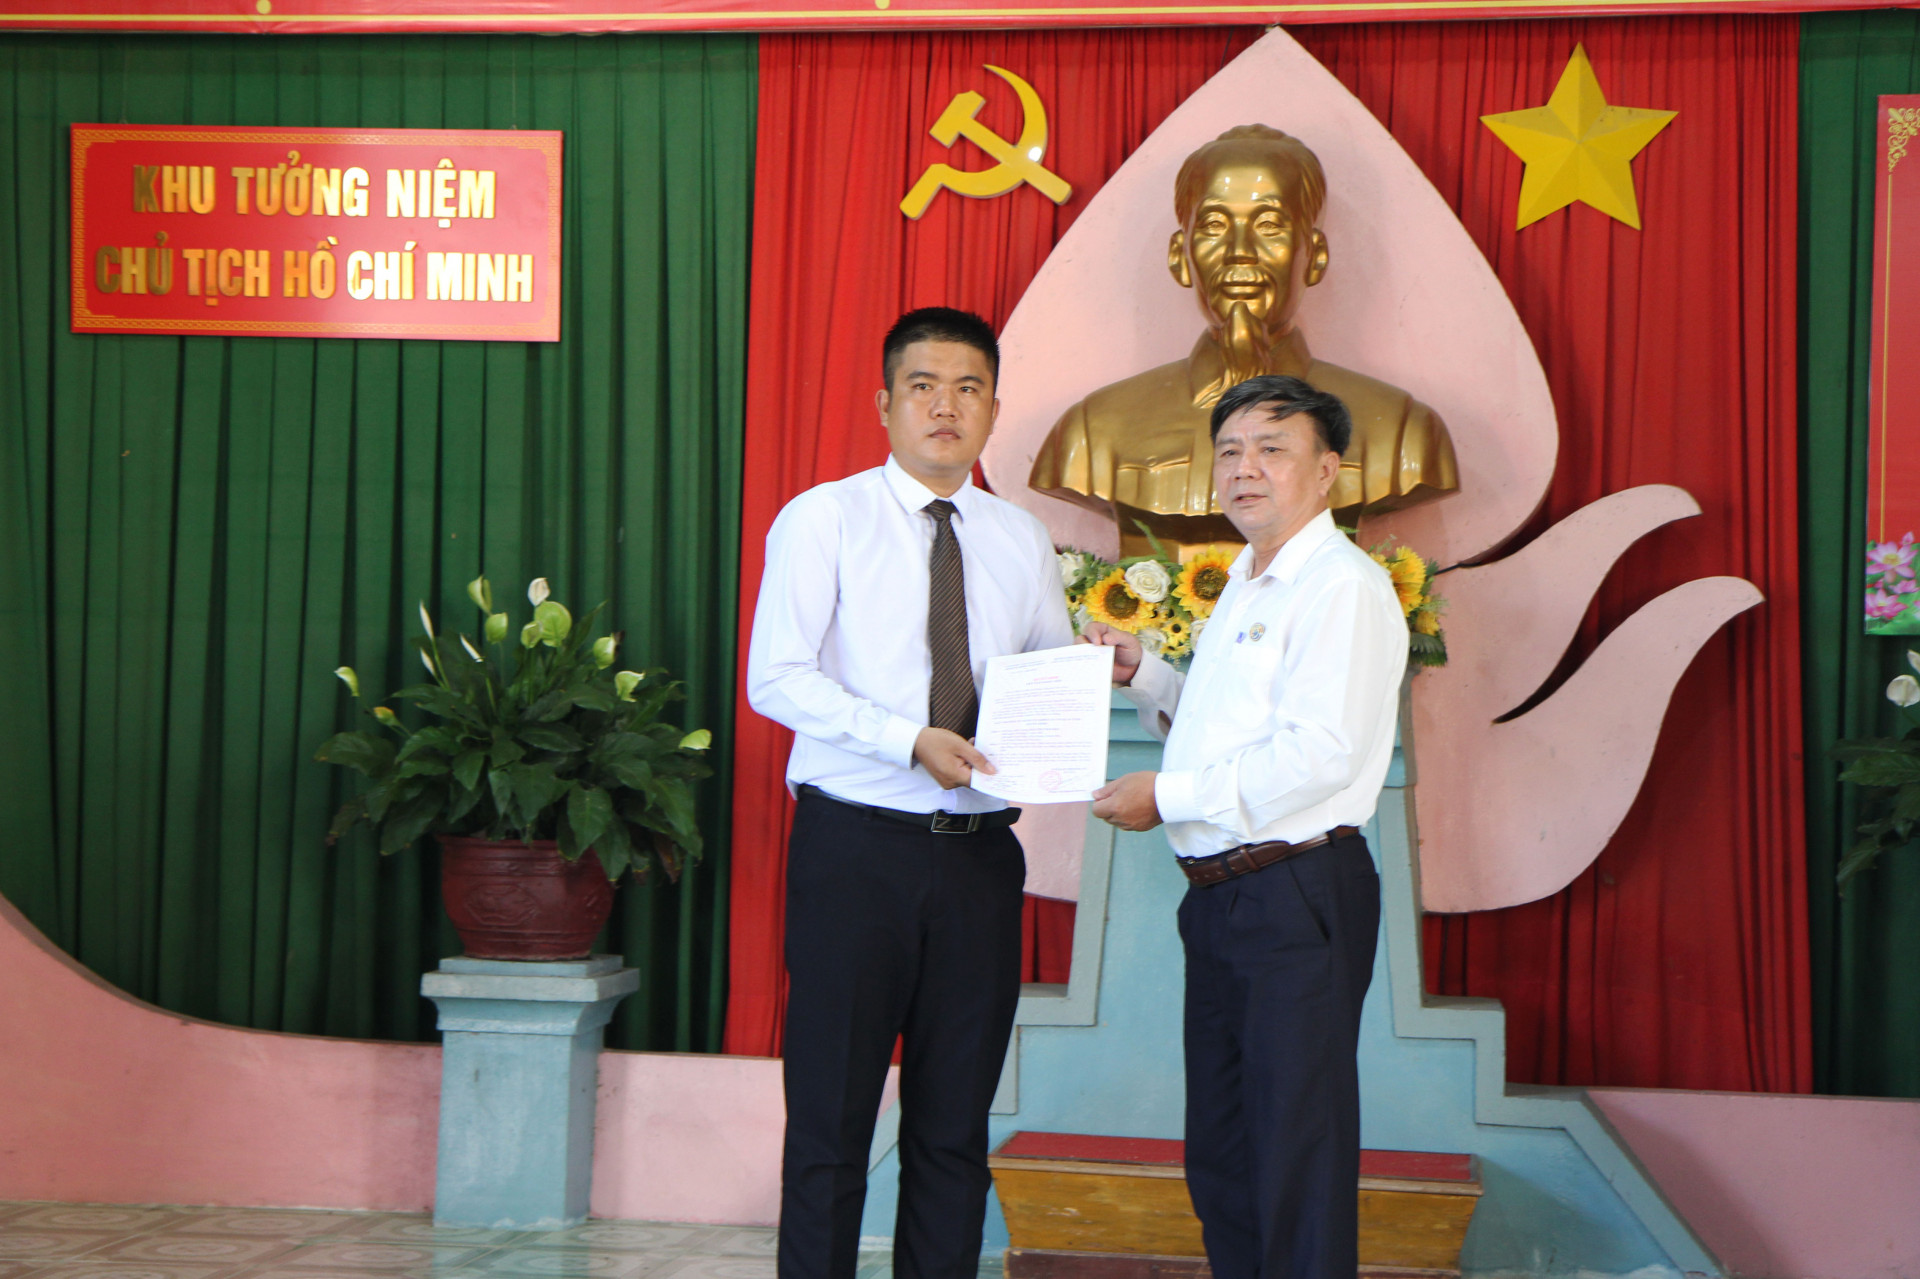 Ông Văn Đình Ân - Đảng ủy viên Đảng ủy Sở Văn hóa và Thể thao, Giám đốc Trung tâm Văn hóa - Điện ảnh tỉnh trao quyết định kết nạp cho đảng viên mới.